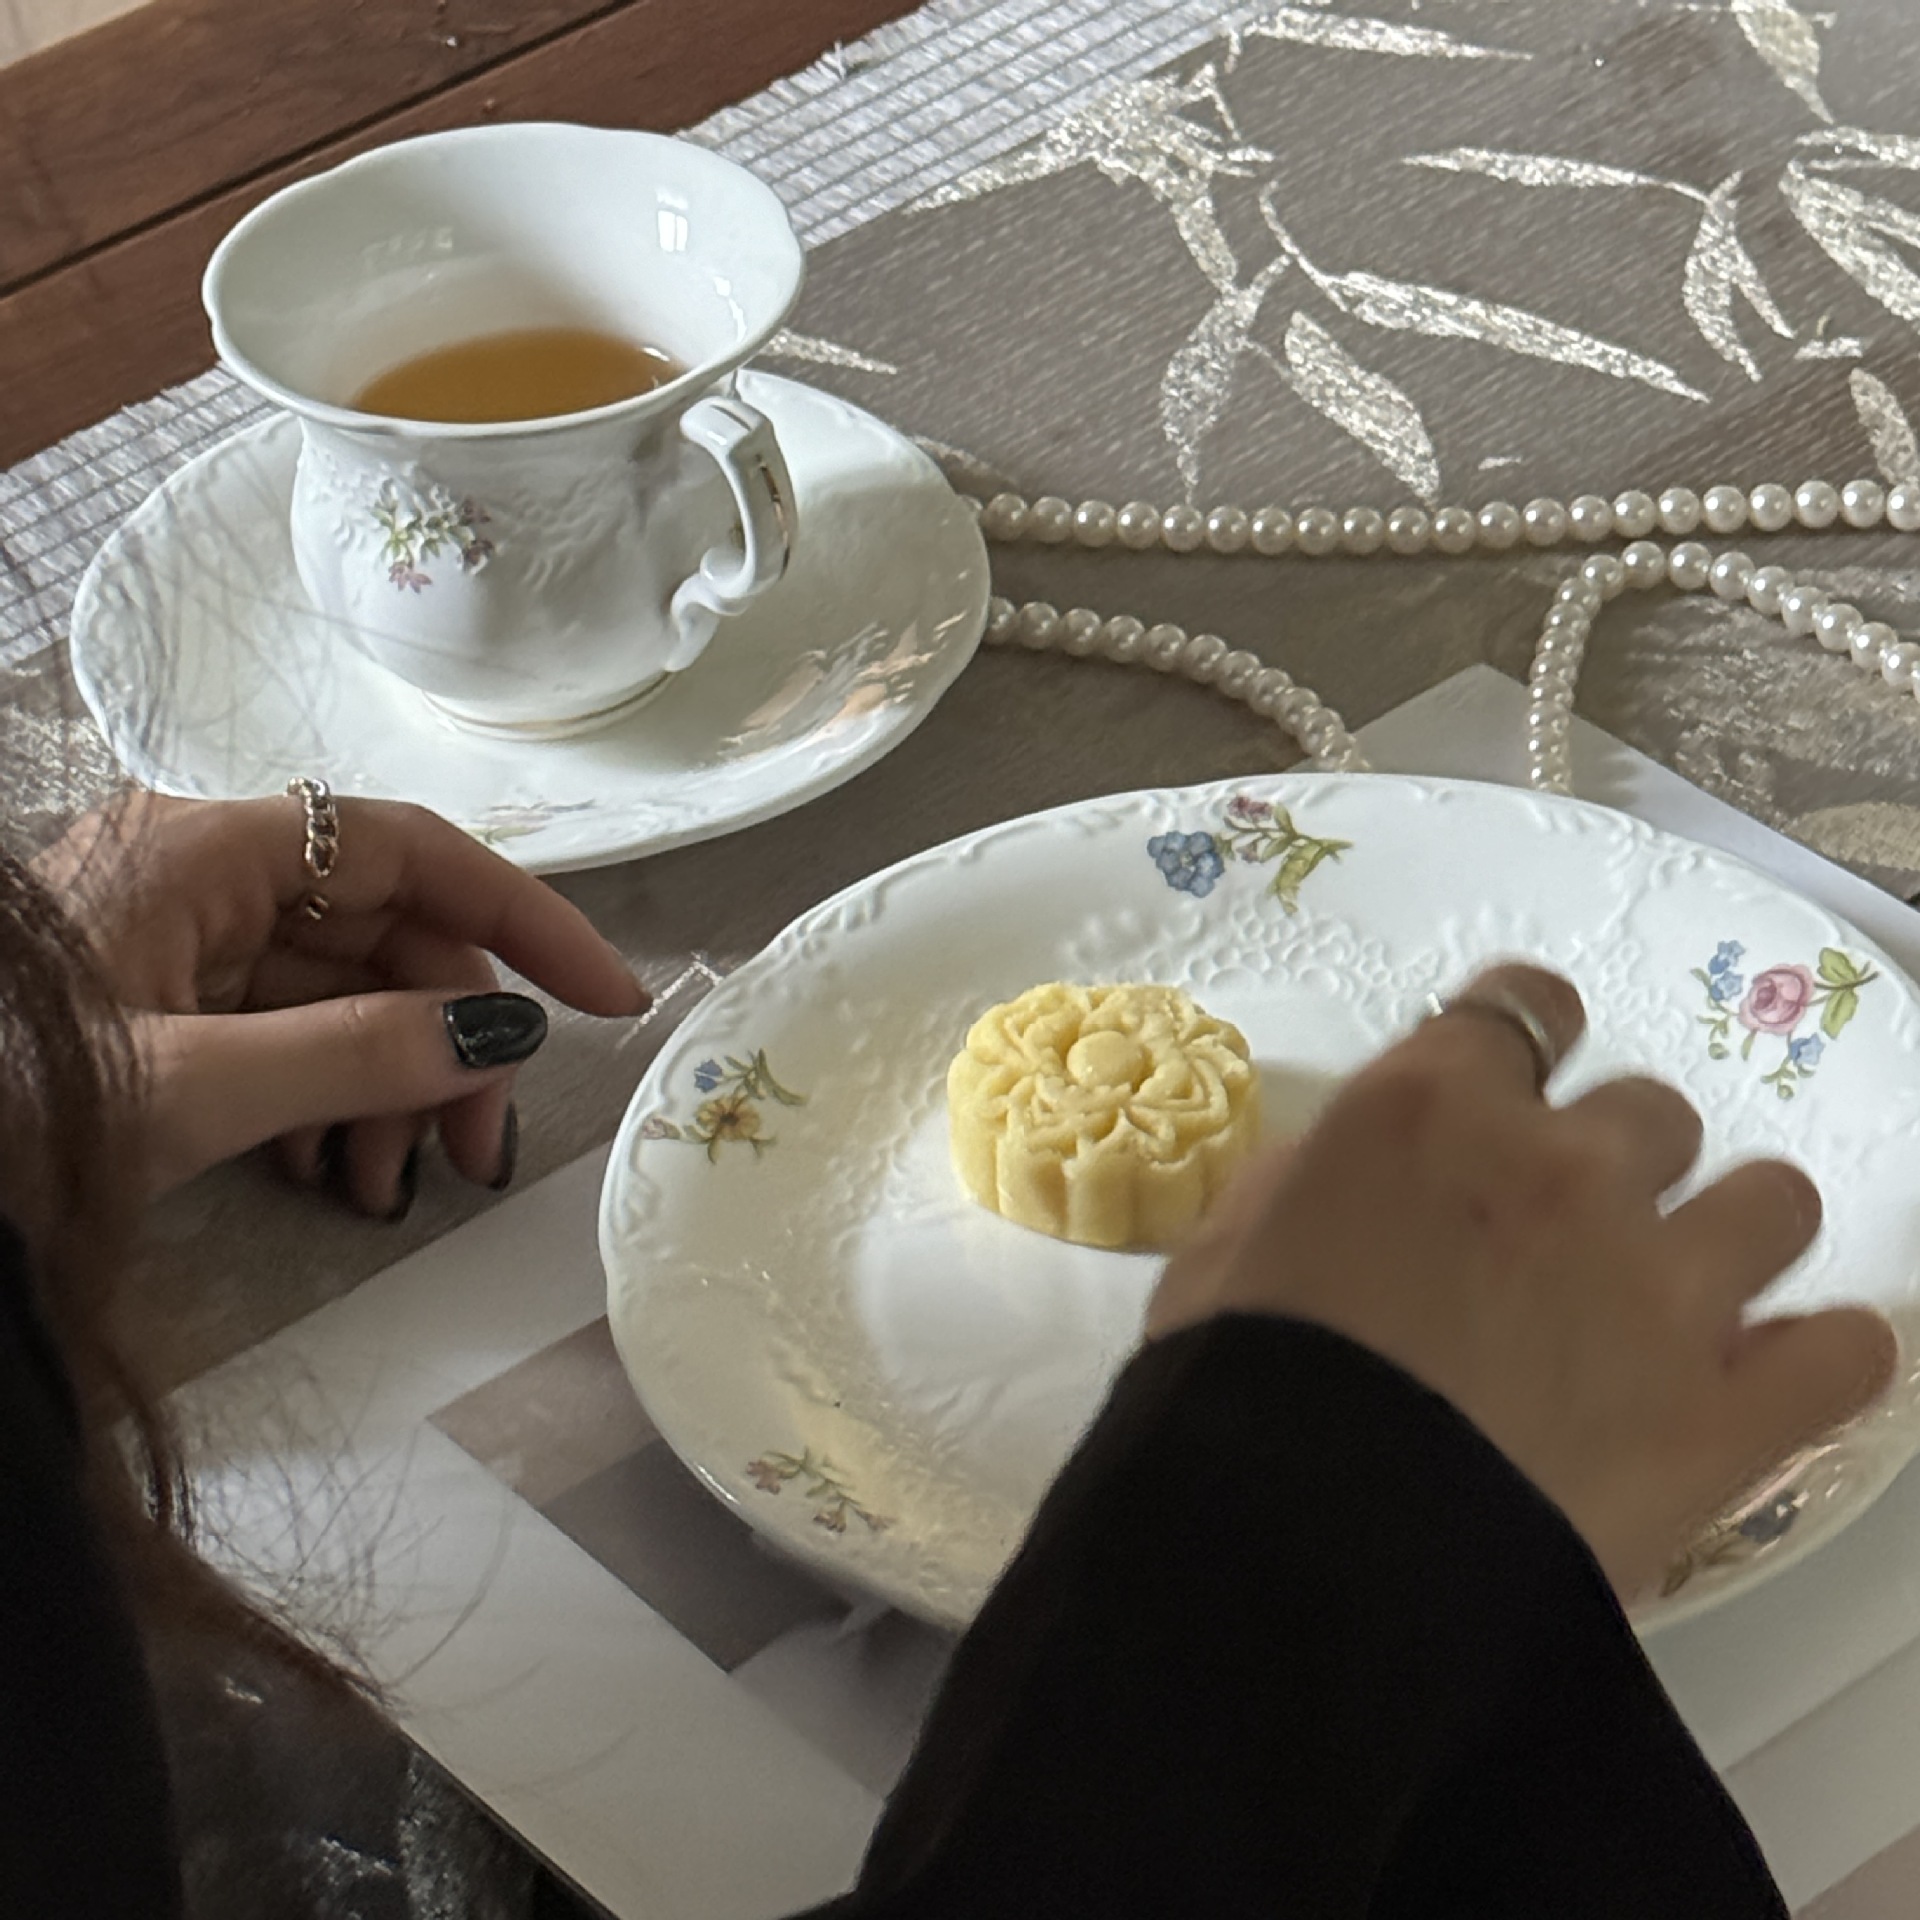 法式vintage复古浮雕花卉陶瓷杯碟下午茶咖啡甜品家用西餐早餐盘